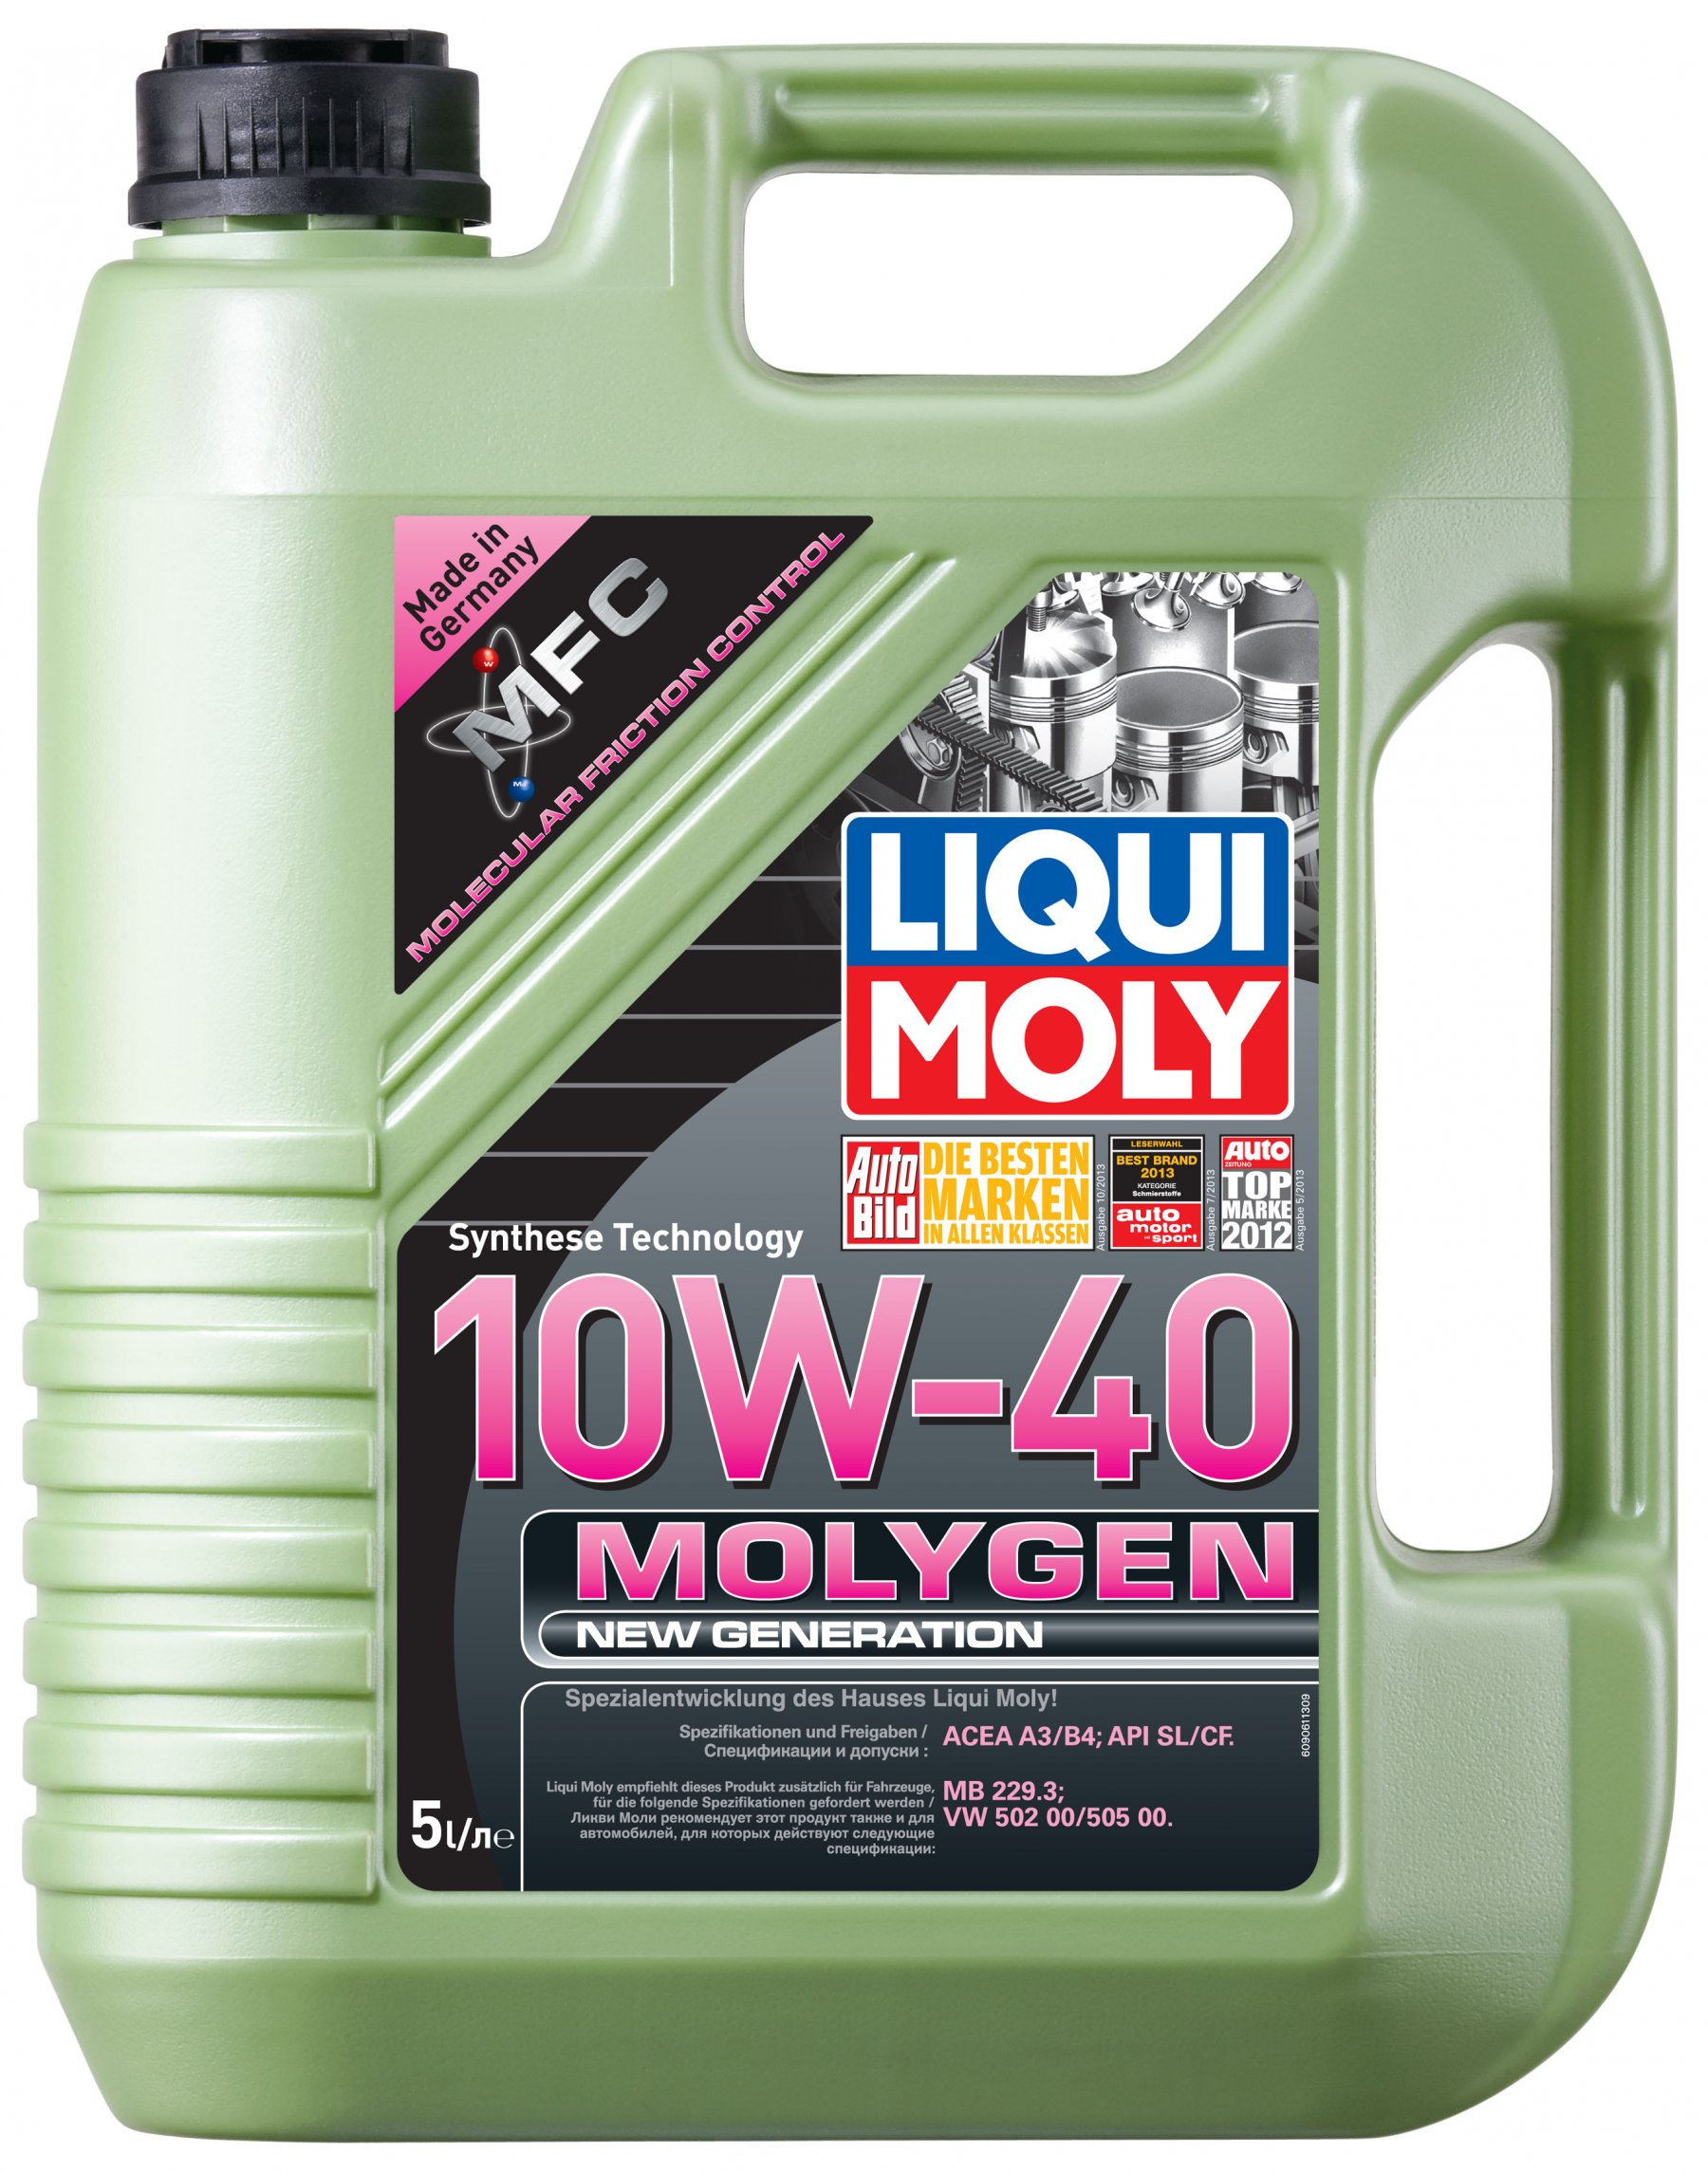 Liqui Moly Molygen 10w-40